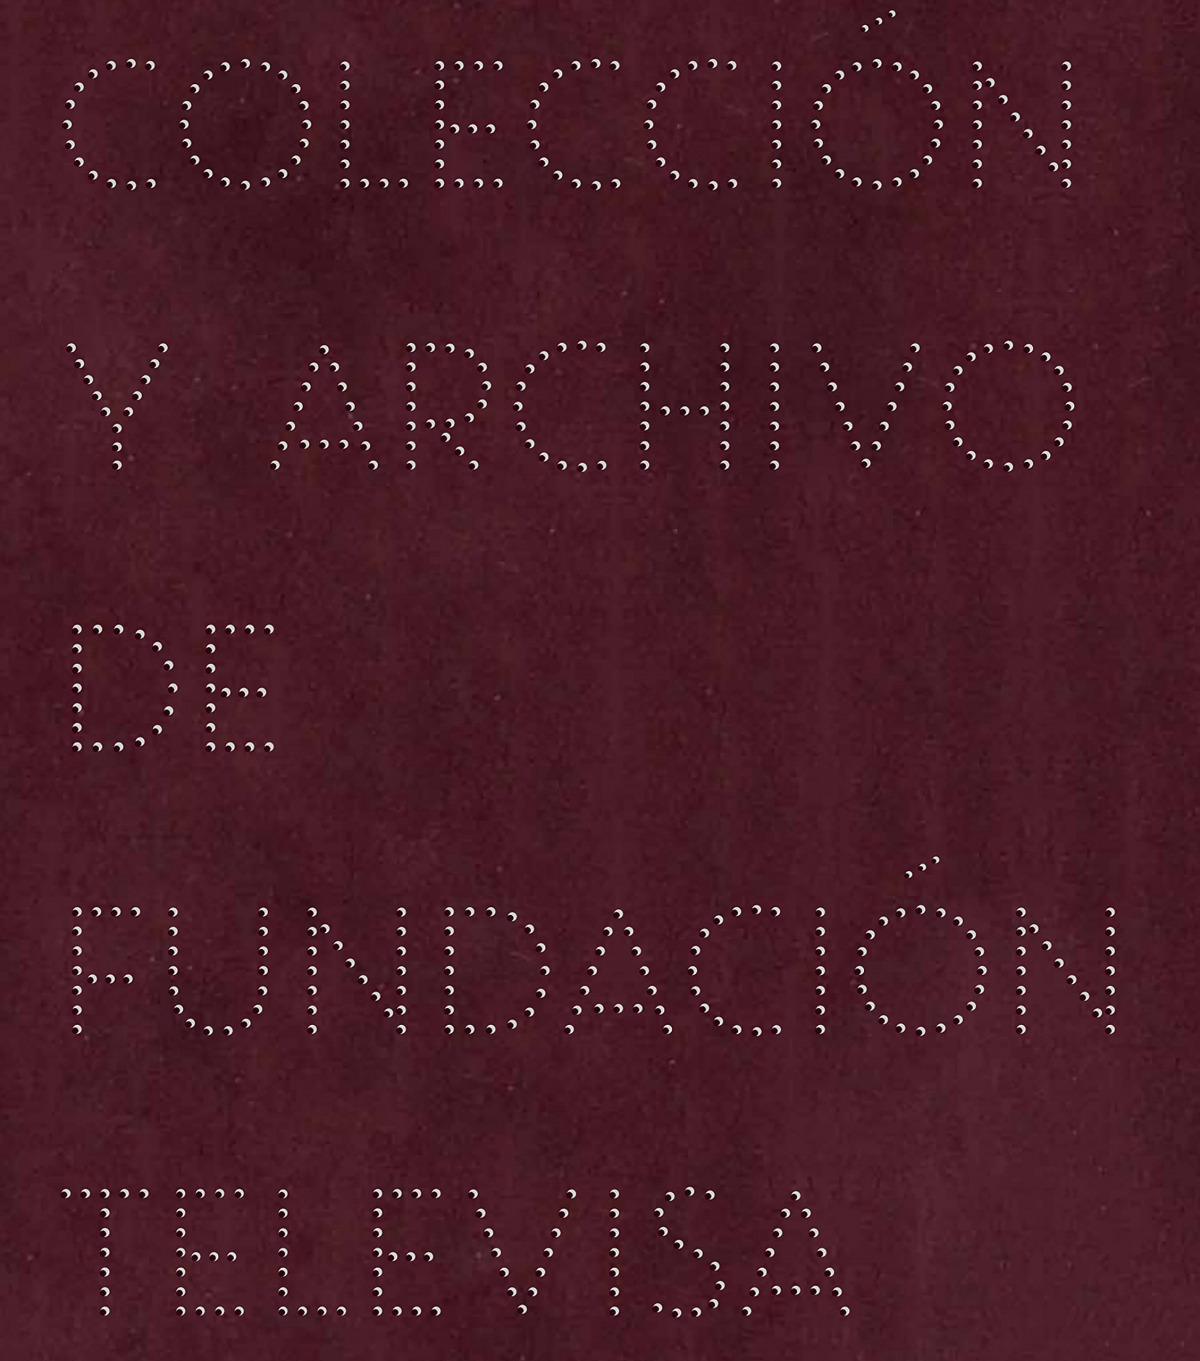 Imaginario Colección y archivo de fundación televisa - Vv.Aa.